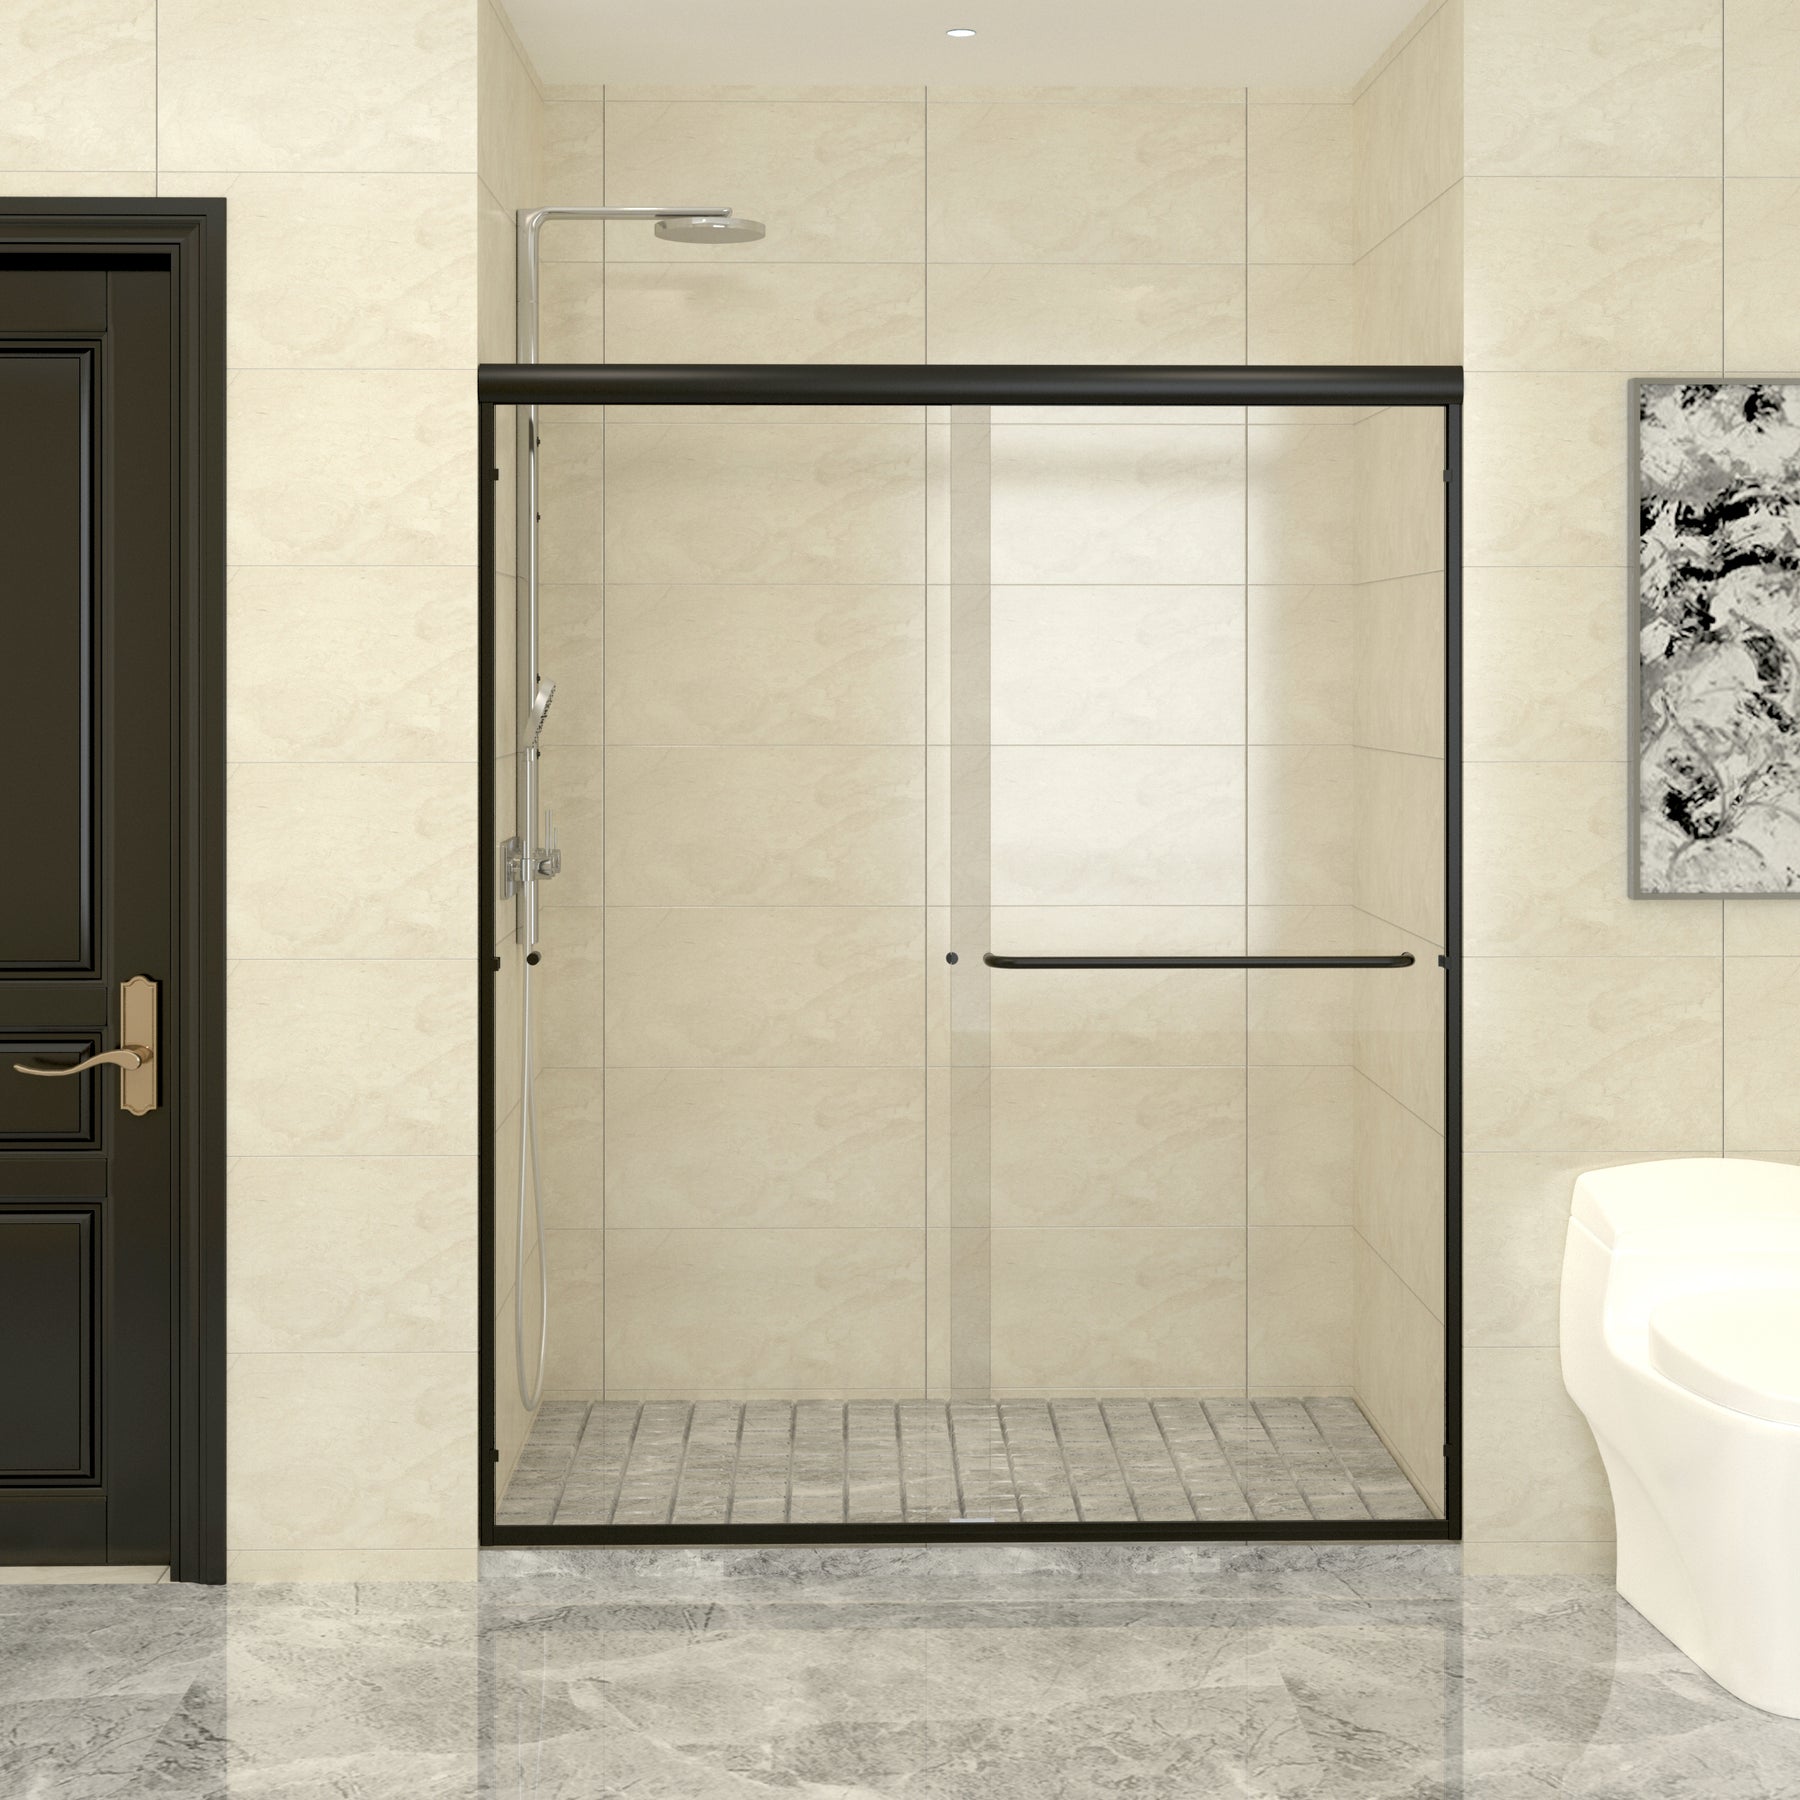 SL4U Framed Sliding Shower Door, Shower 1/4" Clear Glass, Matte Black Finish, 60" W x 72" H door.